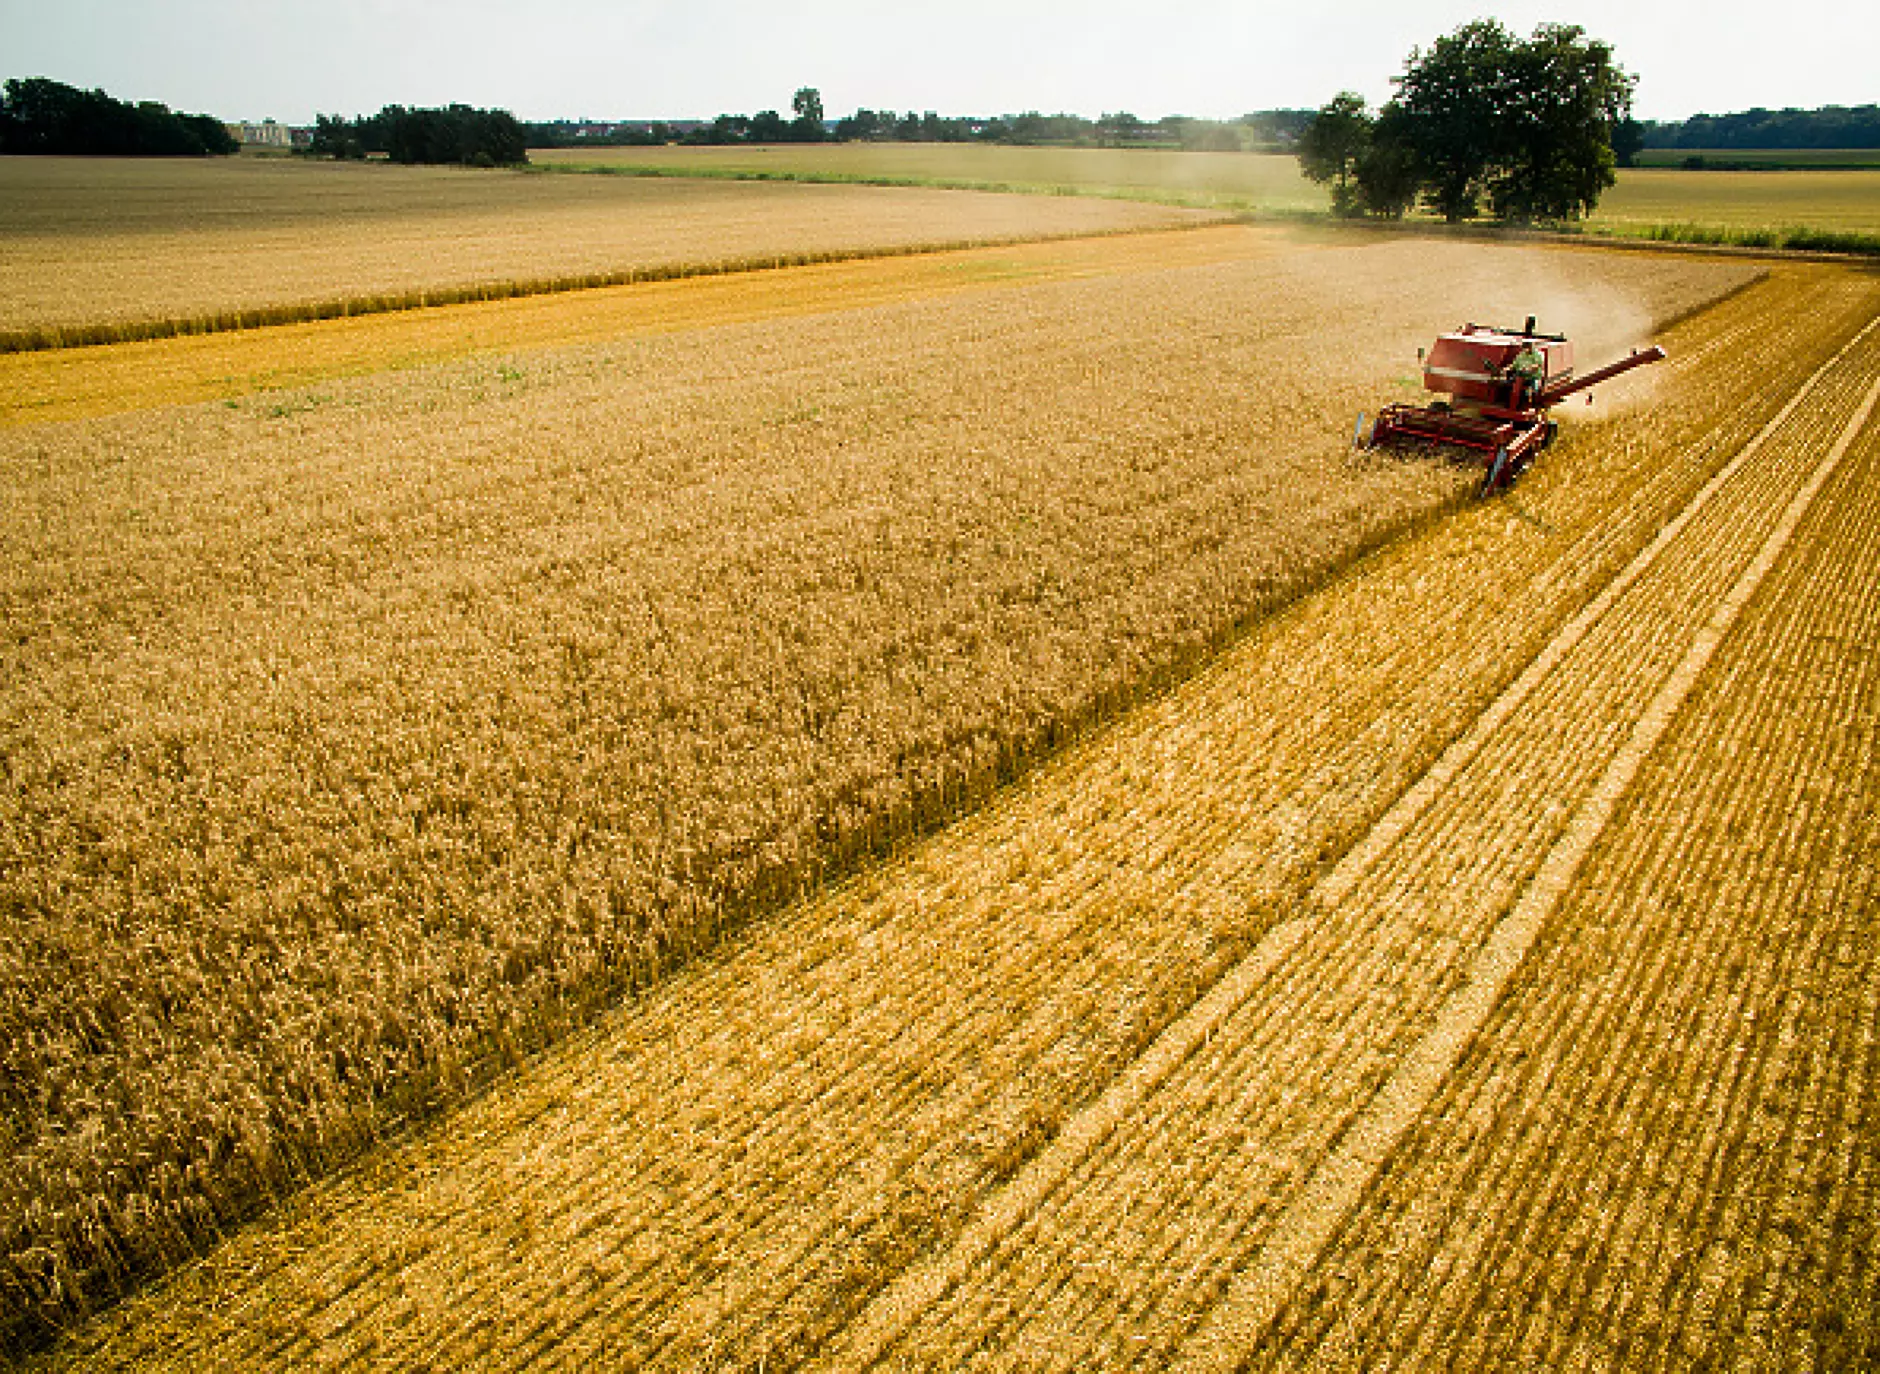 Над 10 млн. тона пшеница и слънчоглед излязоха от Украйна по коридорите на солидарността 